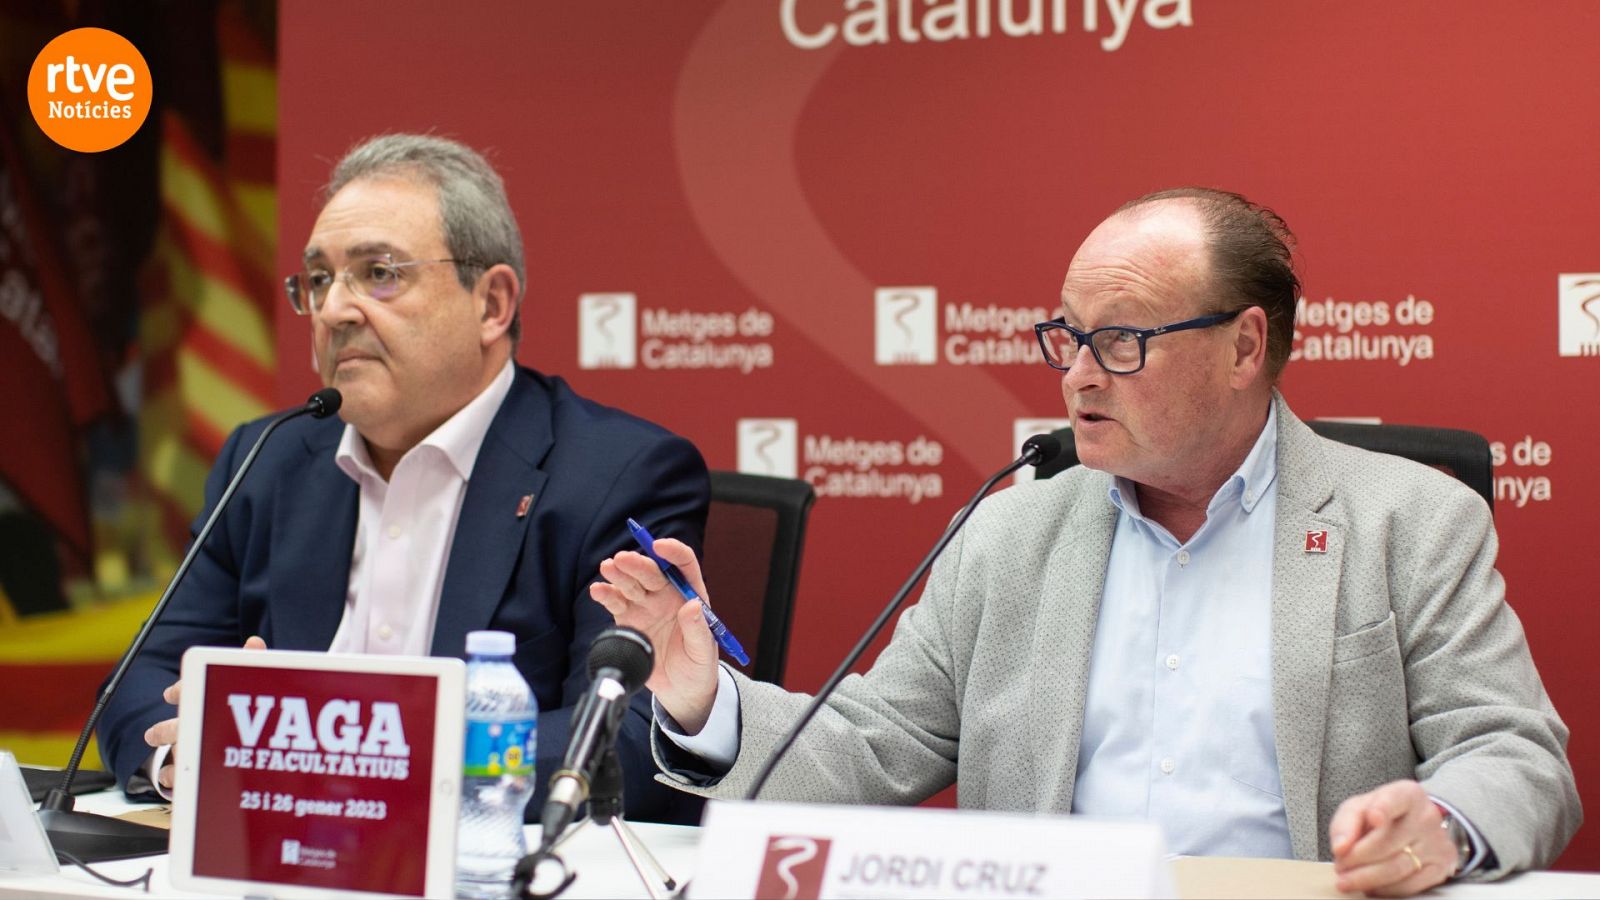 El secretari general del sindicat Metges de Catalunya, Xavier Lleonart, i el president, Jordi Cruz